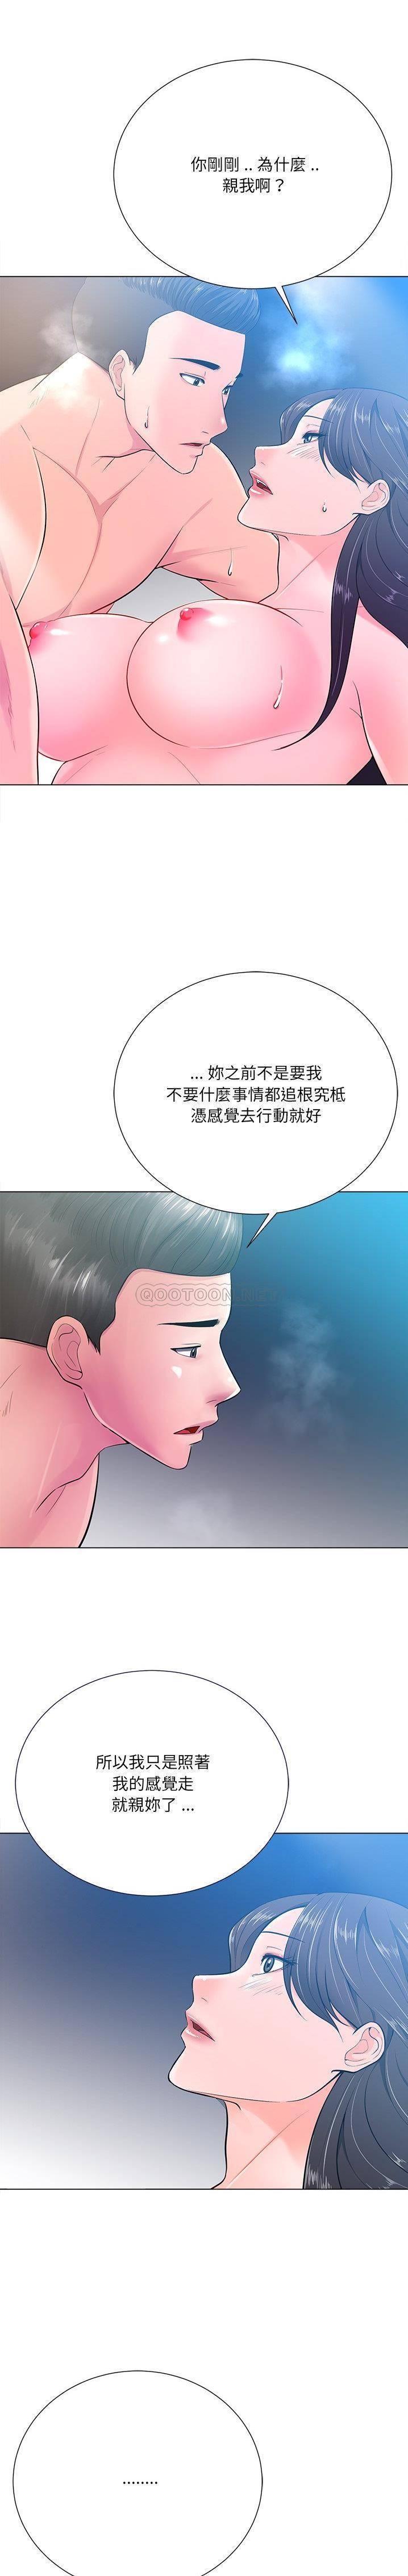 韩国污漫画 相差一輪的悸動 第16话 20